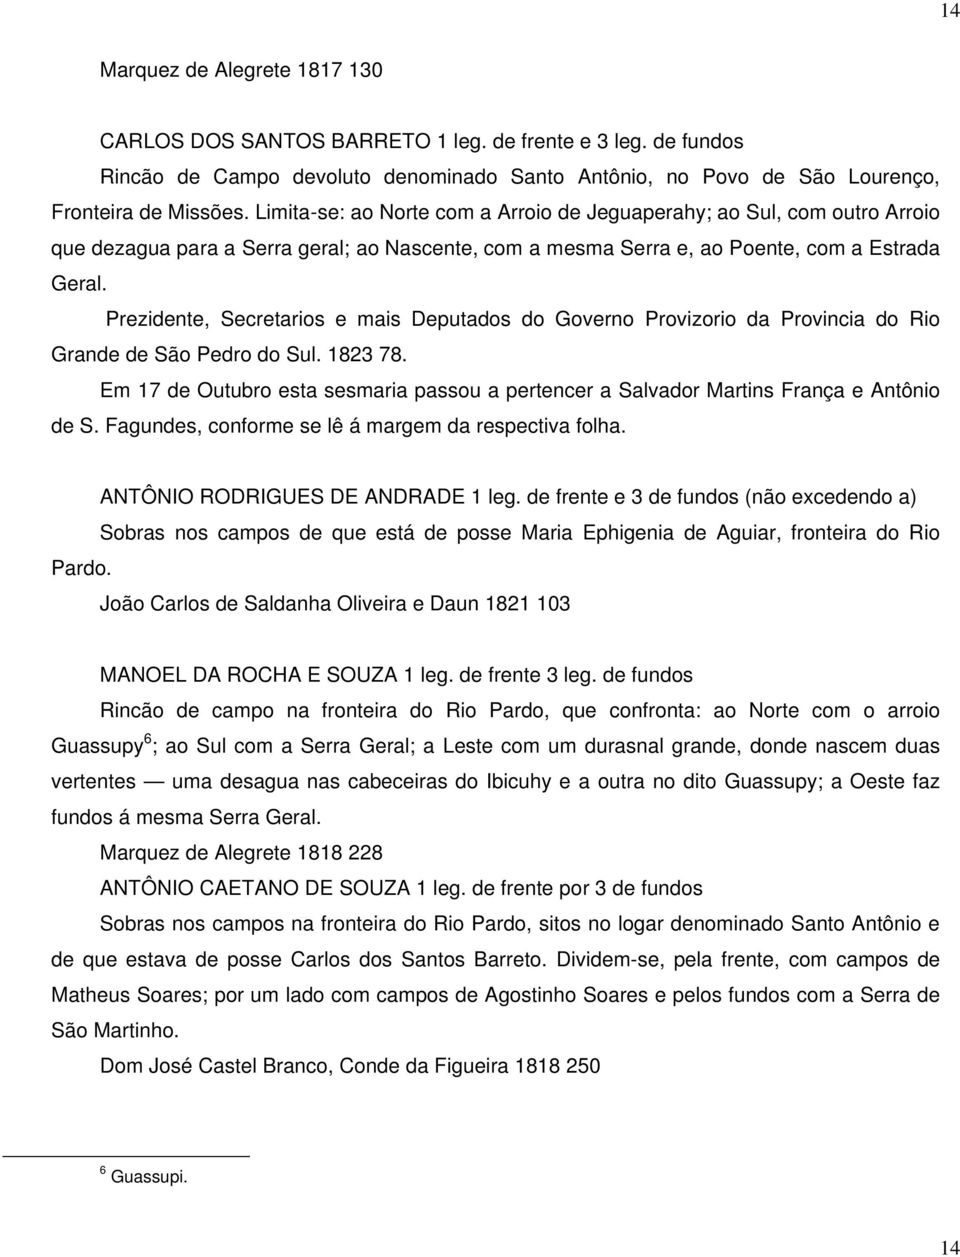 Prezidente, Secretarios e mais Deputados do Governo Provizorio da Provincia do Rio Grande de São Pedro do Sul. 1823 78.